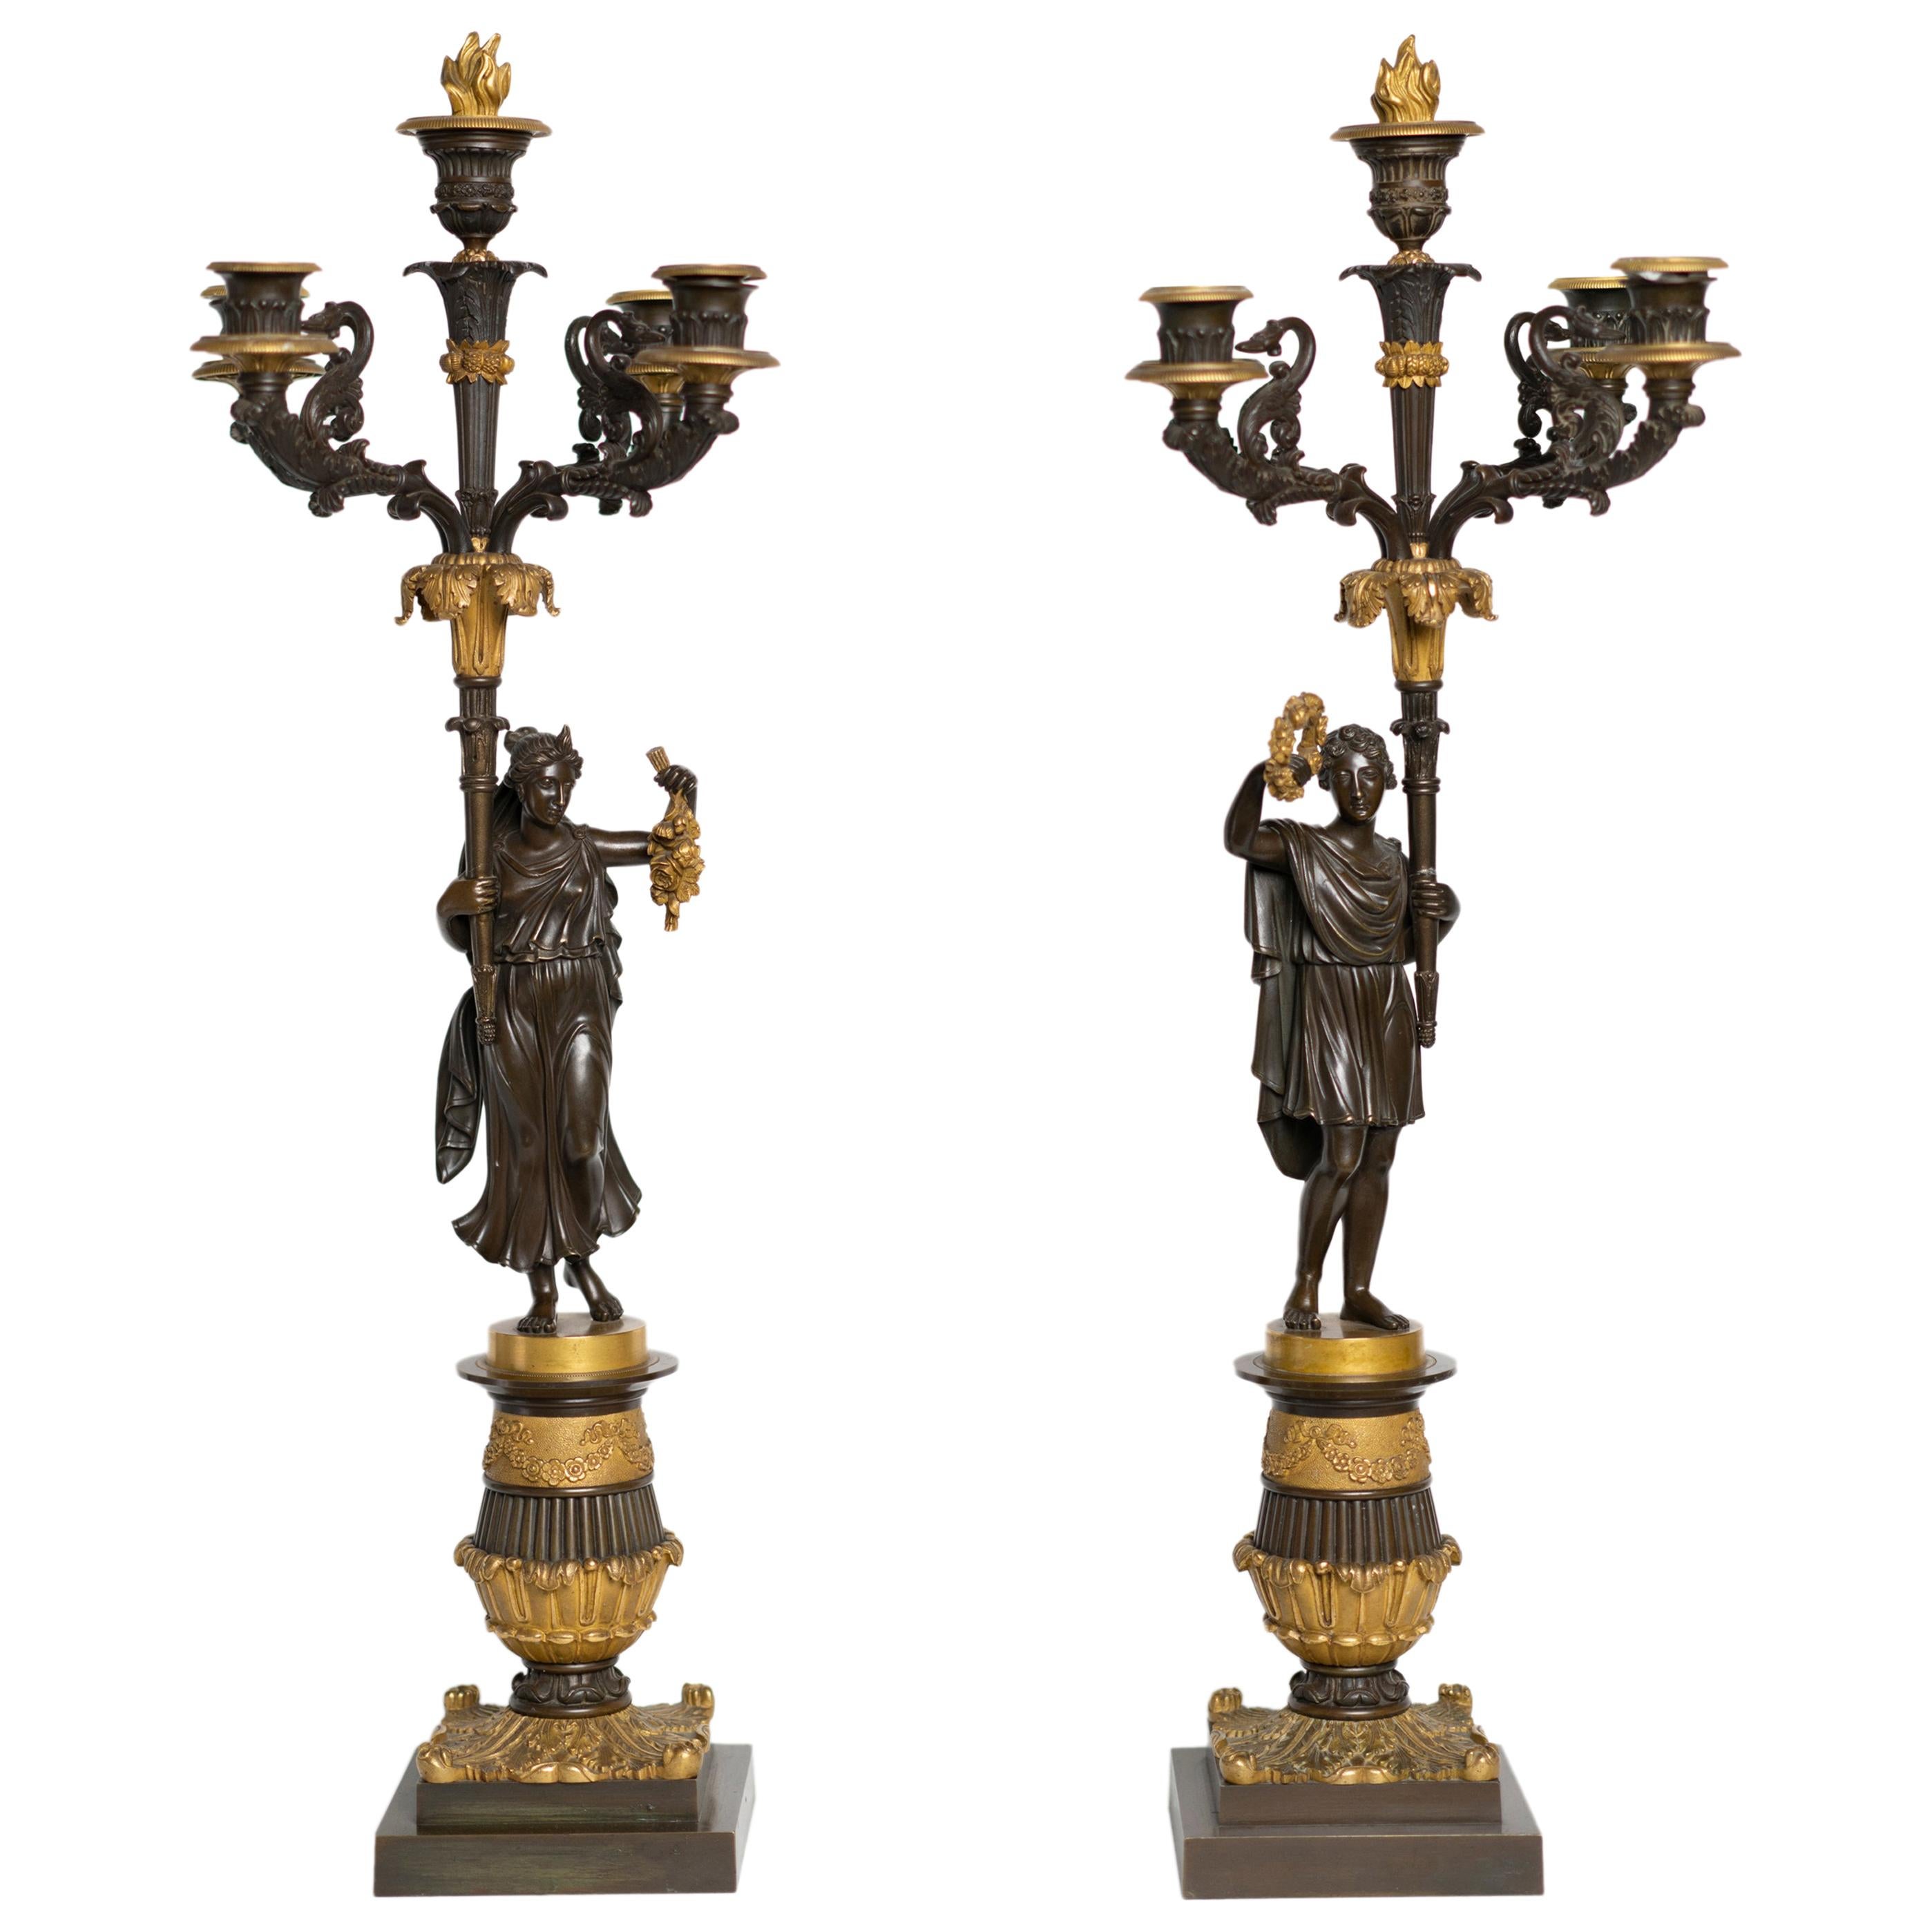 Paire de candélabres d'époque Charles X en bronze doré et patiné représentant un couple romain